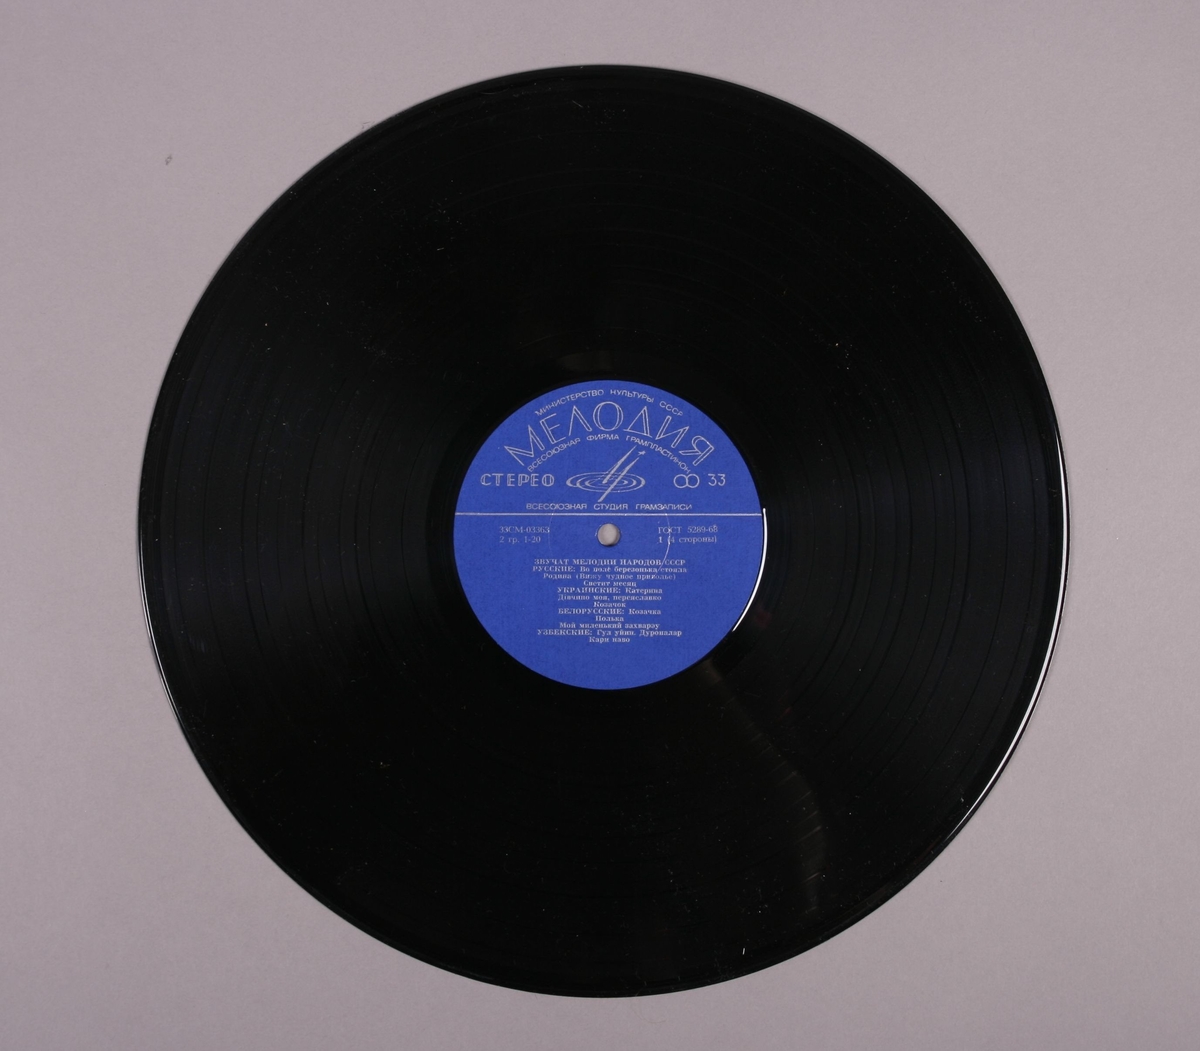 Grammofonplate i svart vinyl og uoriginalt plateomslag i papir. Påskrift på baksiden av plateomslaget hvor det står "Ulike meloder fra forskj. områder!".  Plata ligger i en plastlomme.